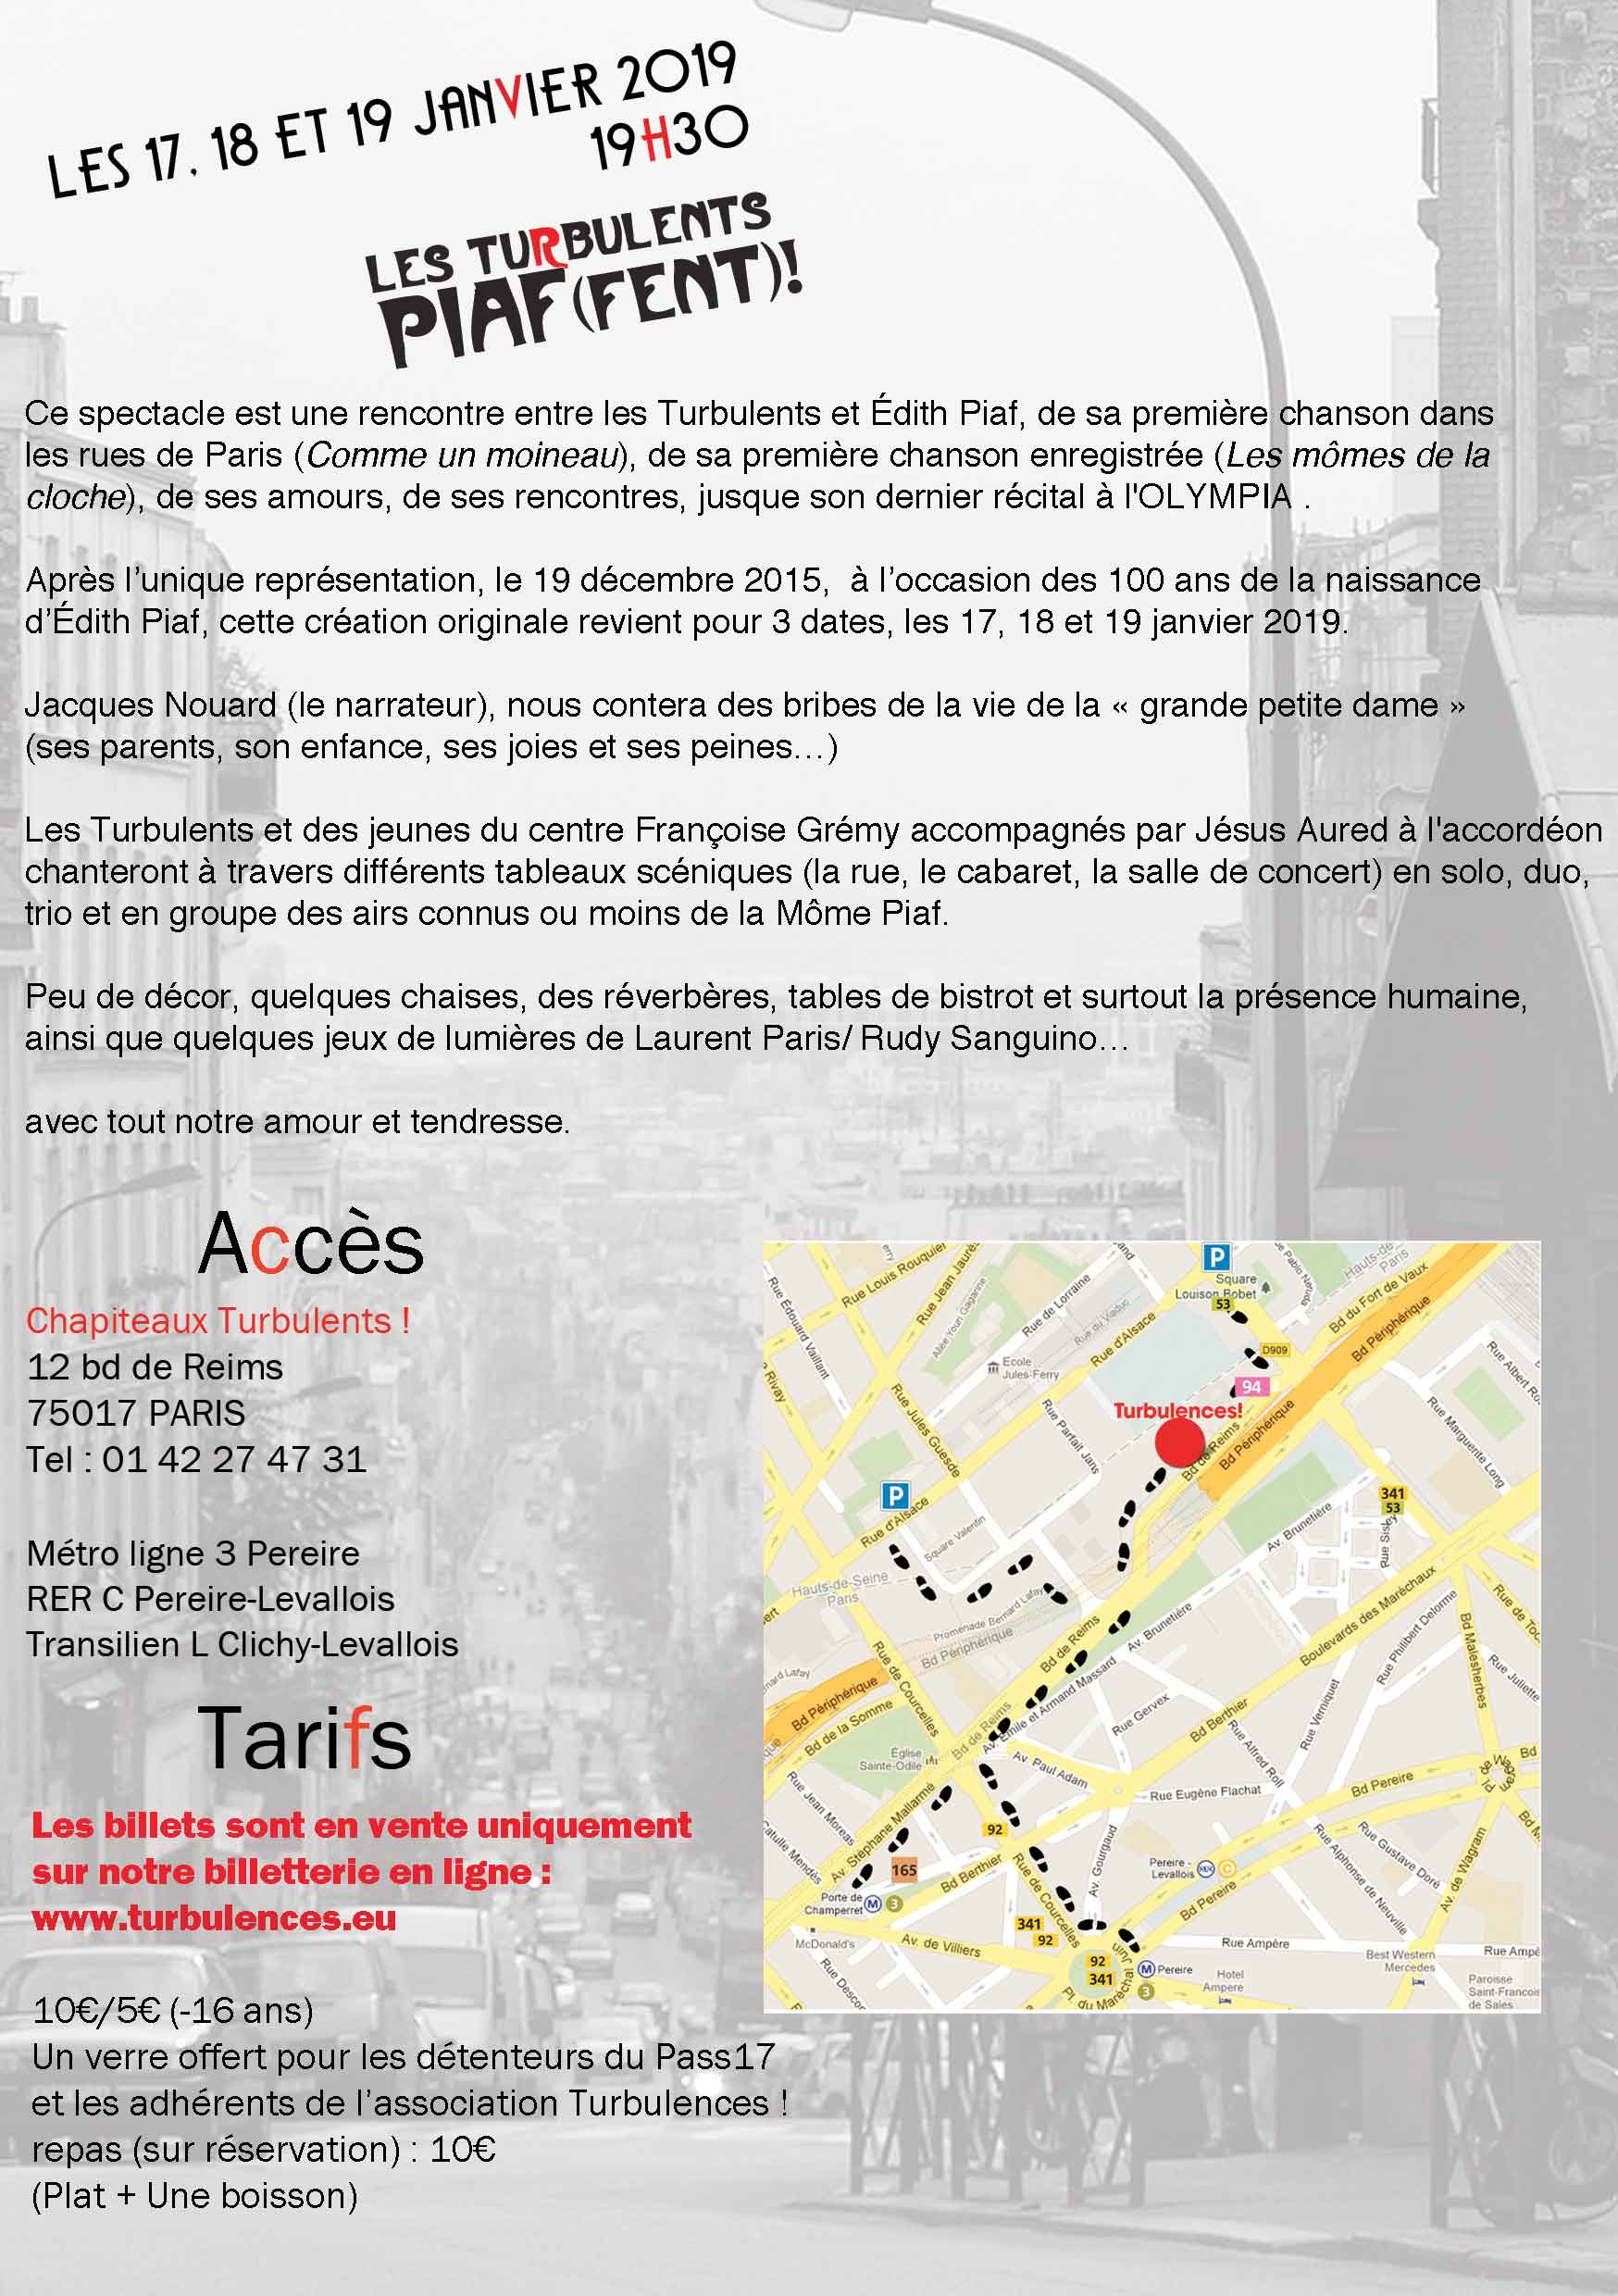 Les Turbulents Piaf (FENT) ! 17, 18 et 19 Janvier 2019